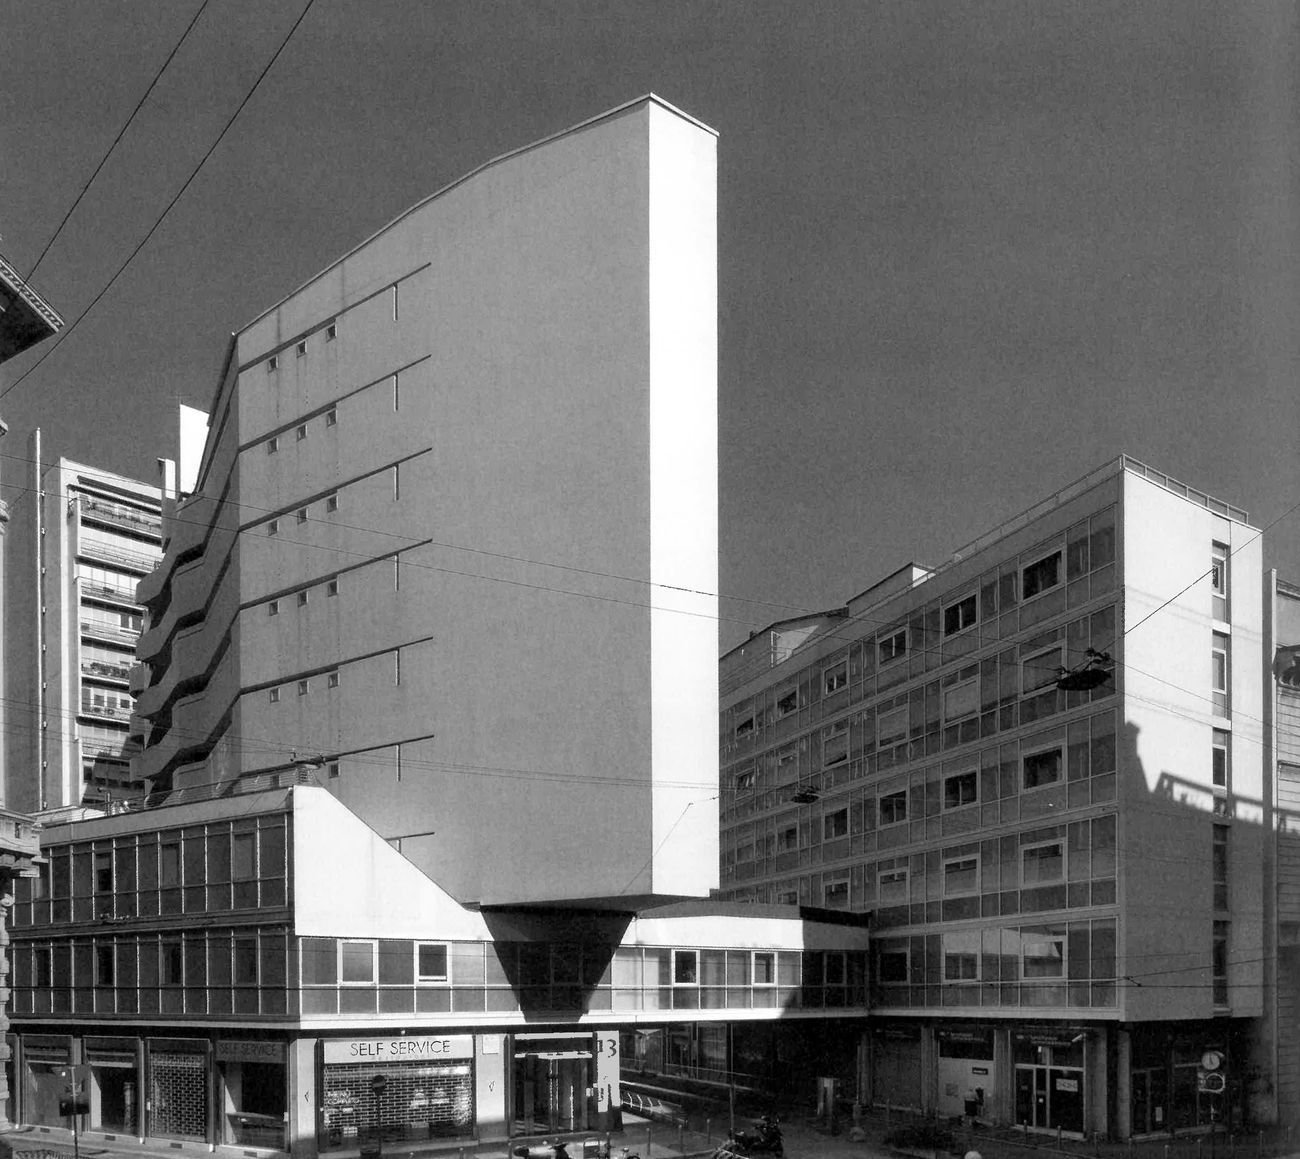 Luigi Moretti, Edificio per abitazioni in Corso Italia 13-17, Milano, 1949-56. Photo © Stefano Topuntoli